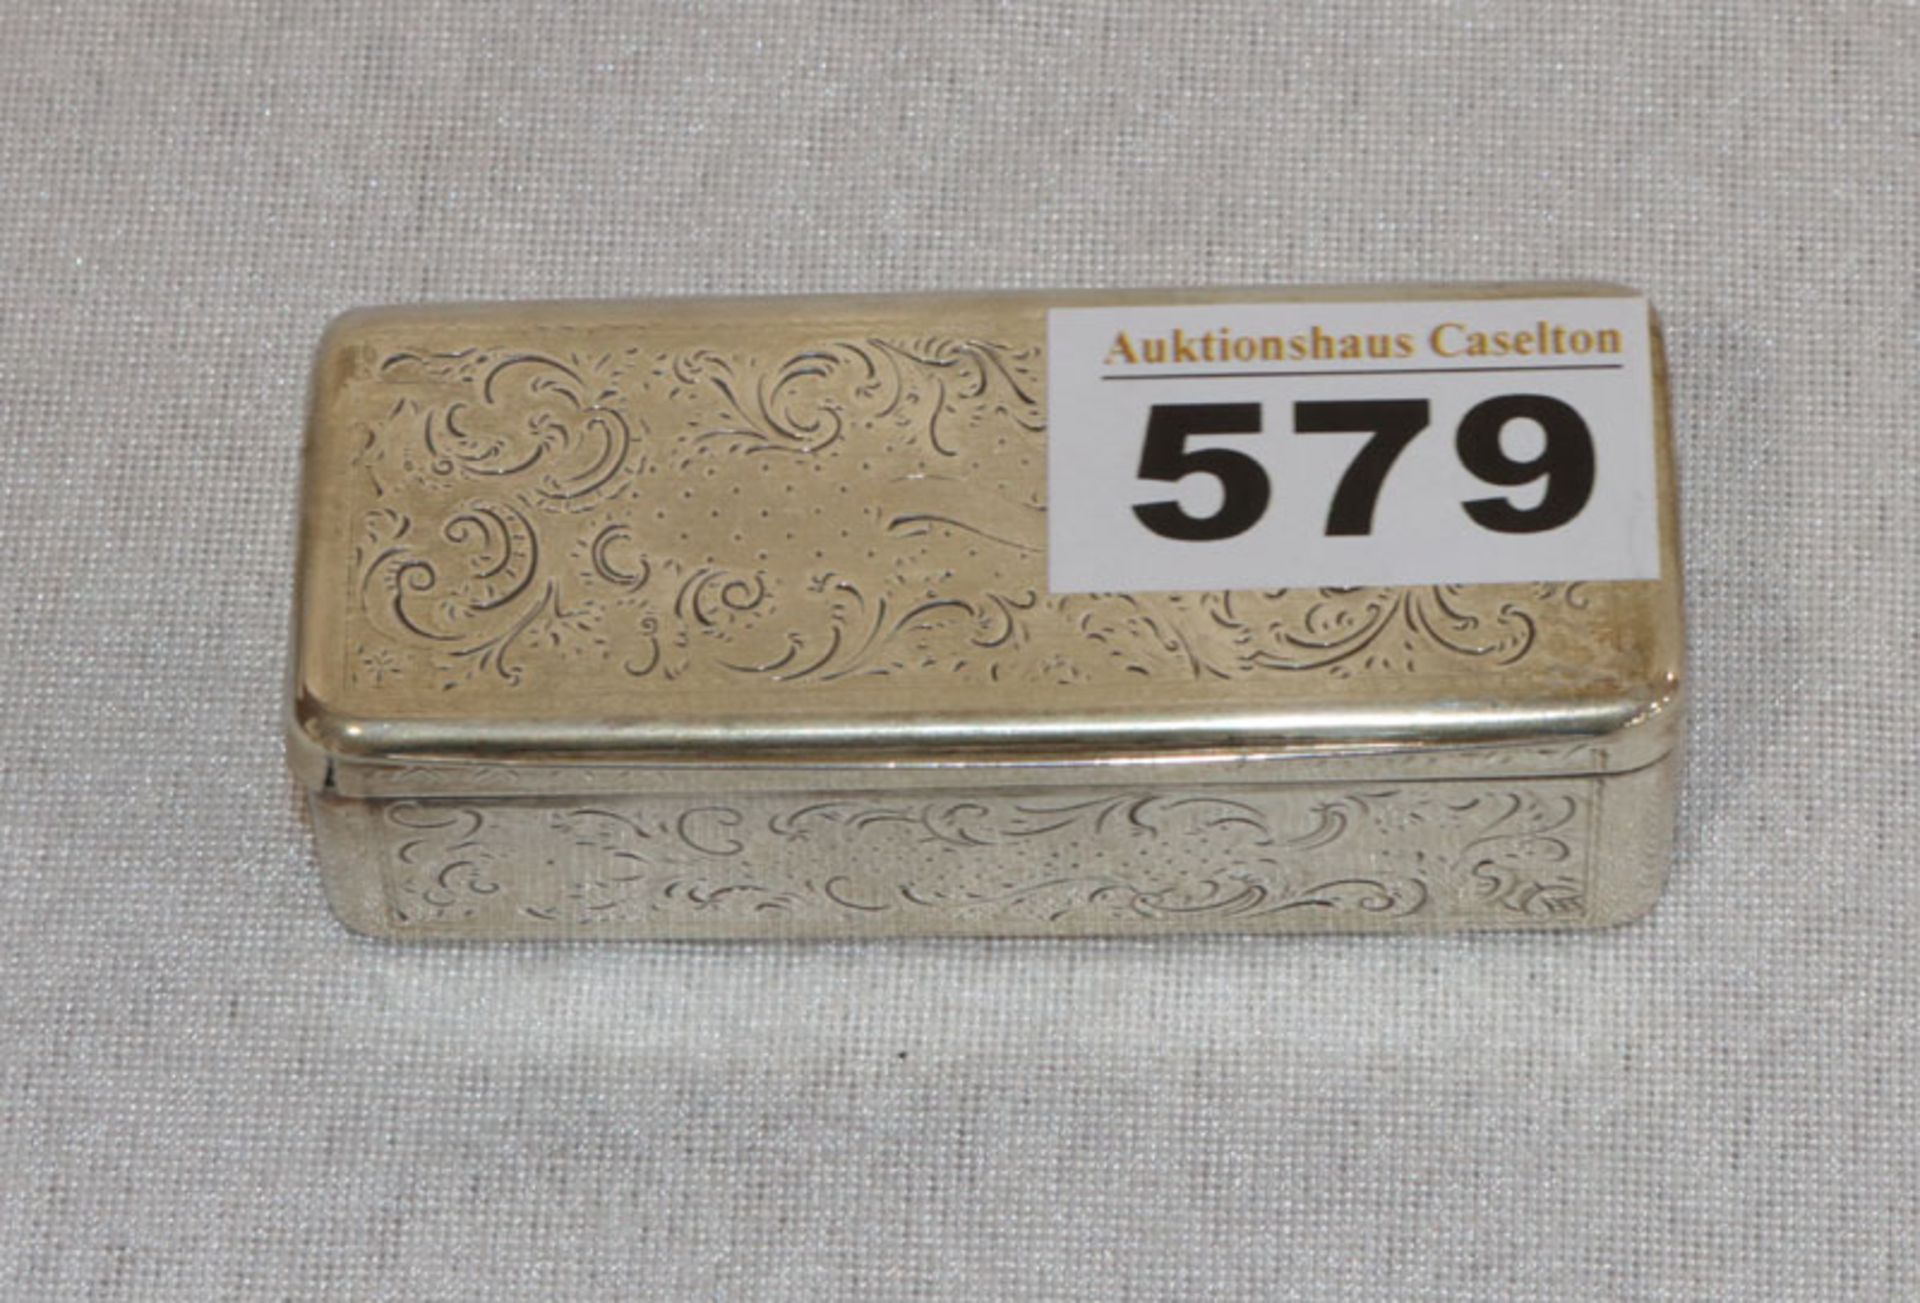 Deckeldose mit graviertem Dekor, 13 Lot Silber um 1840 ?, 70 gr., H 2,5 cm, B 8,5 cm, T 3,5 cm,